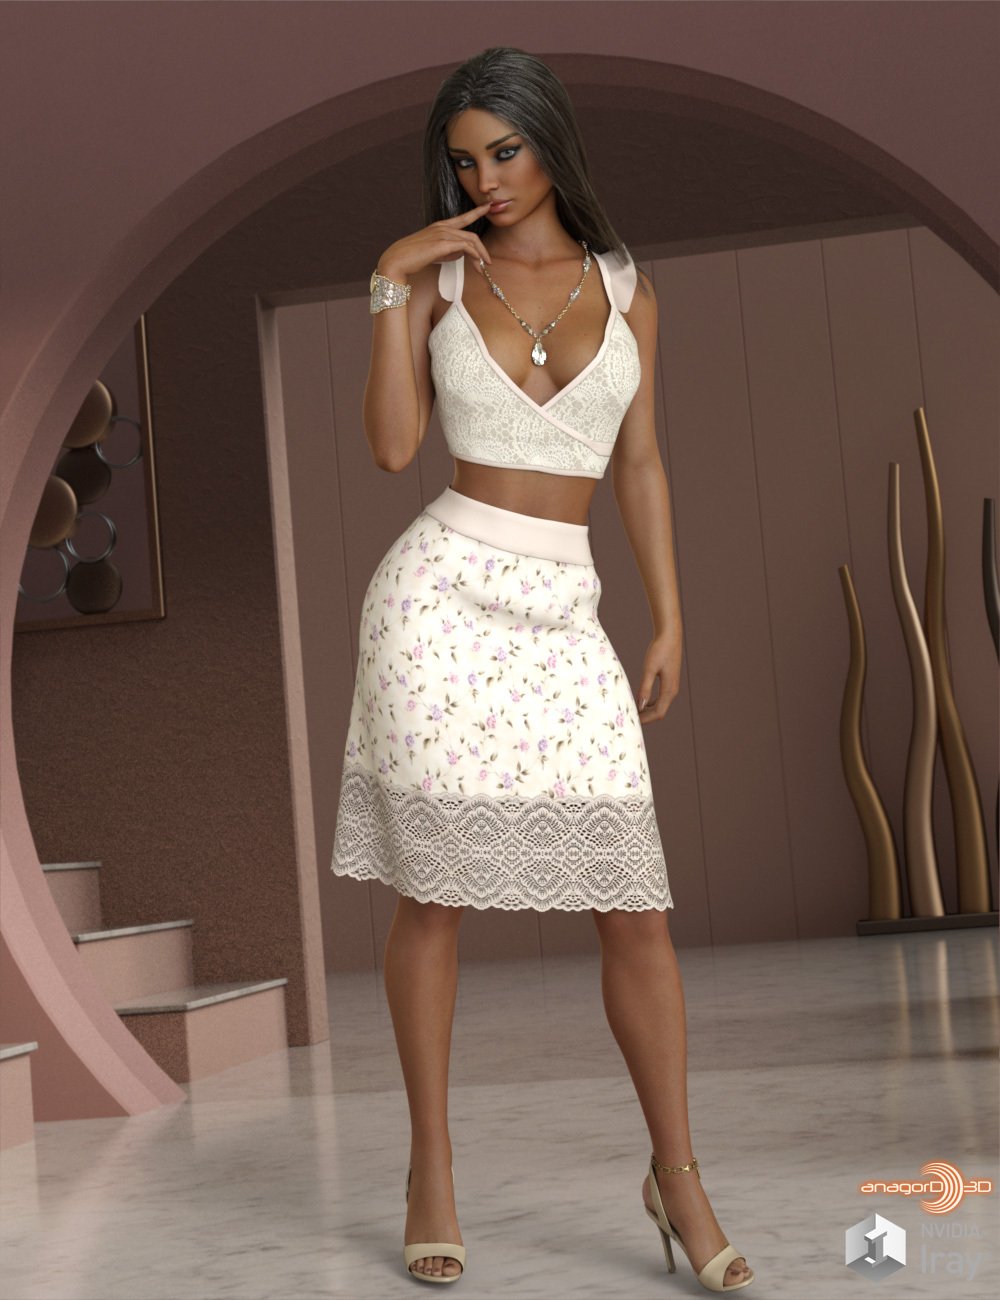 VERSUS - dForce Zara Homewear for Genesis 8.1 Females by: Anagord, 3D Models by Daz 3D